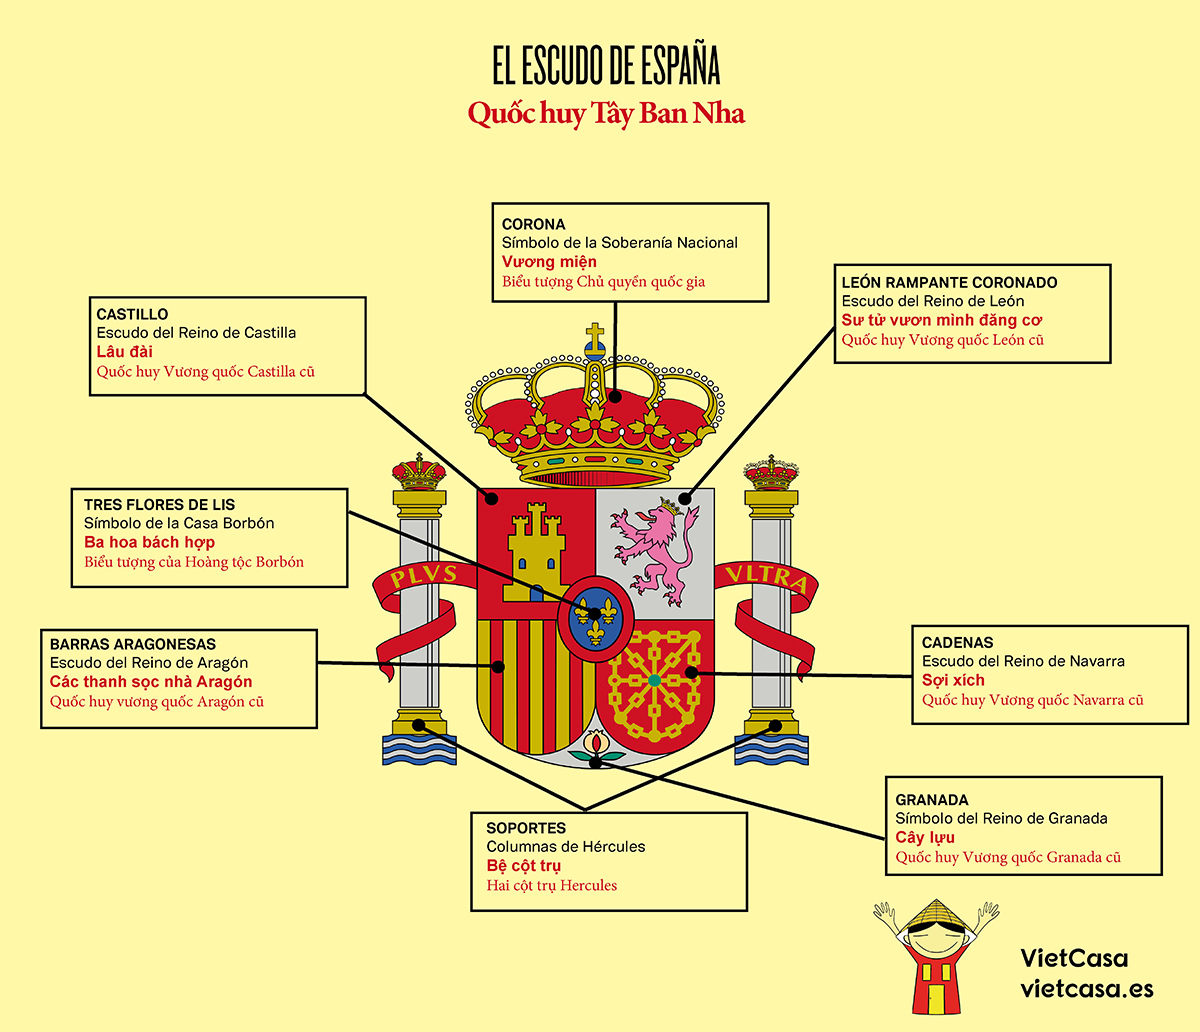 Ý nghĩa của quốc huy Tây Ban Nha là sự quyết tâm và sức mạnh. Nó được thiết kế để thể hiện tinh thần kiên cường của người Tây Ban Nha. Đại bàng trong quốc huy là biểu tượng của quyền lực và uy tín. Hãy xem hình ảnh để cảm nhận ý nghĩa tuyệt vời đó.